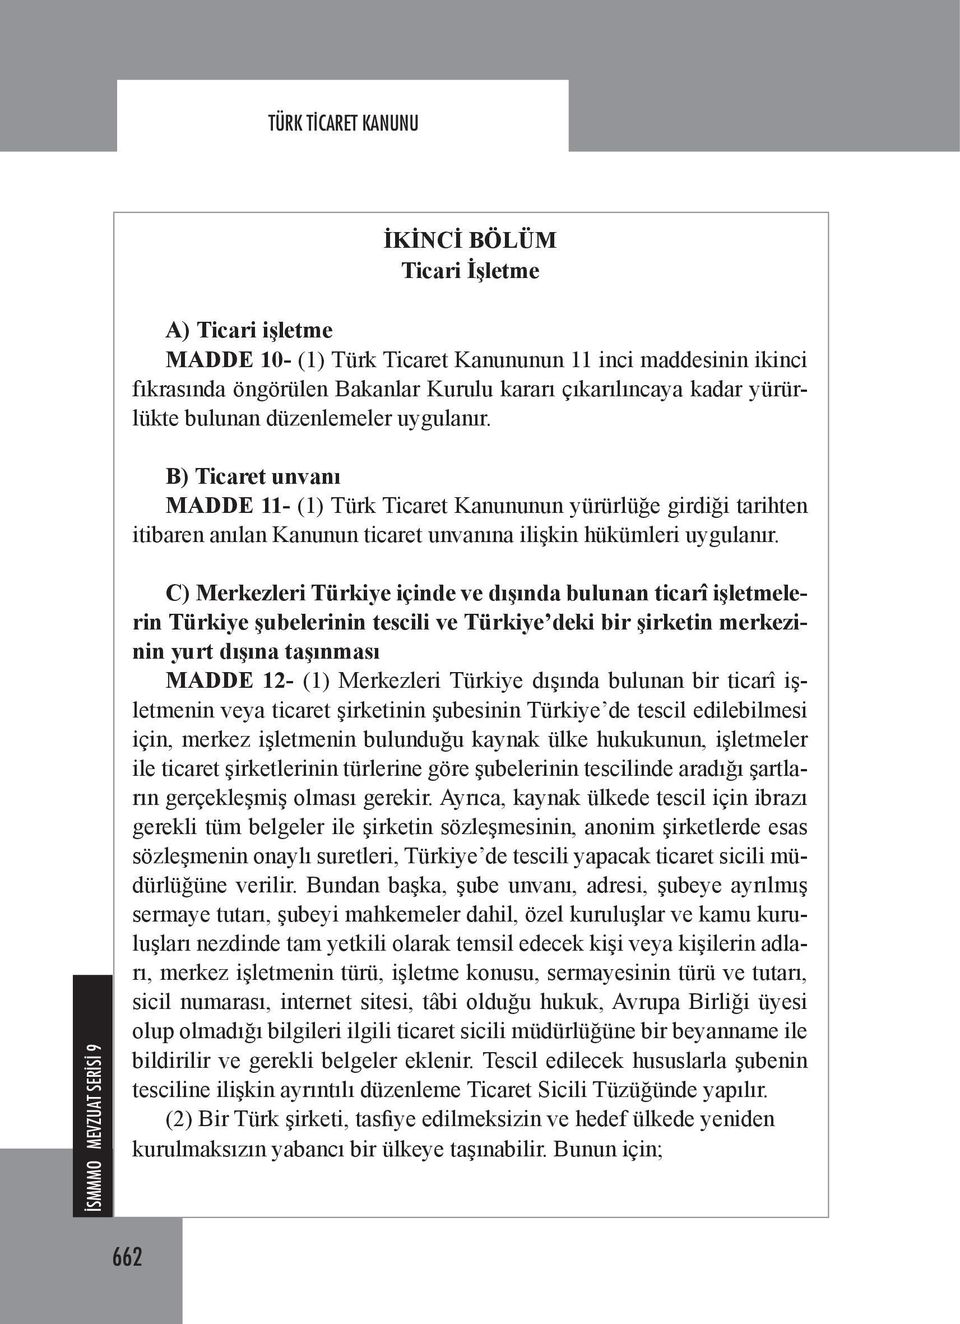 C) Merkezleri Türkiye içinde ve dışında bulunan ticarî işletmelerin Türkiye şubelerinin tescili ve Türkiye deki bir şirketin merkezinin yurt dışına taşınması MADDE 12- (1) Merkezleri Türkiye dışında